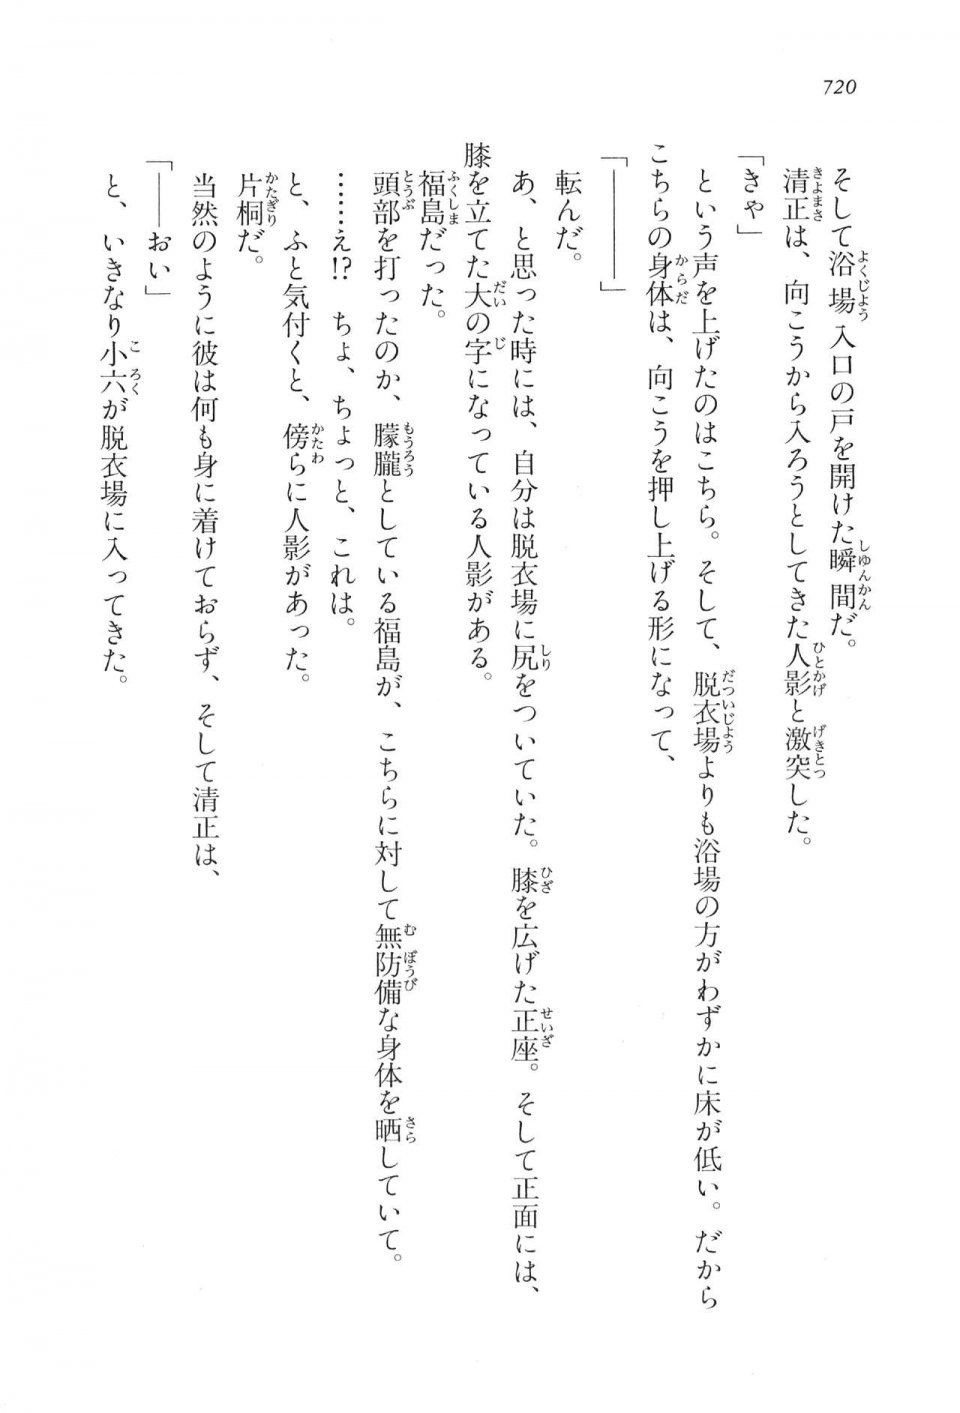 Kyoukai Senjou no Horizon LN Vol 17(7B) - Photo #722